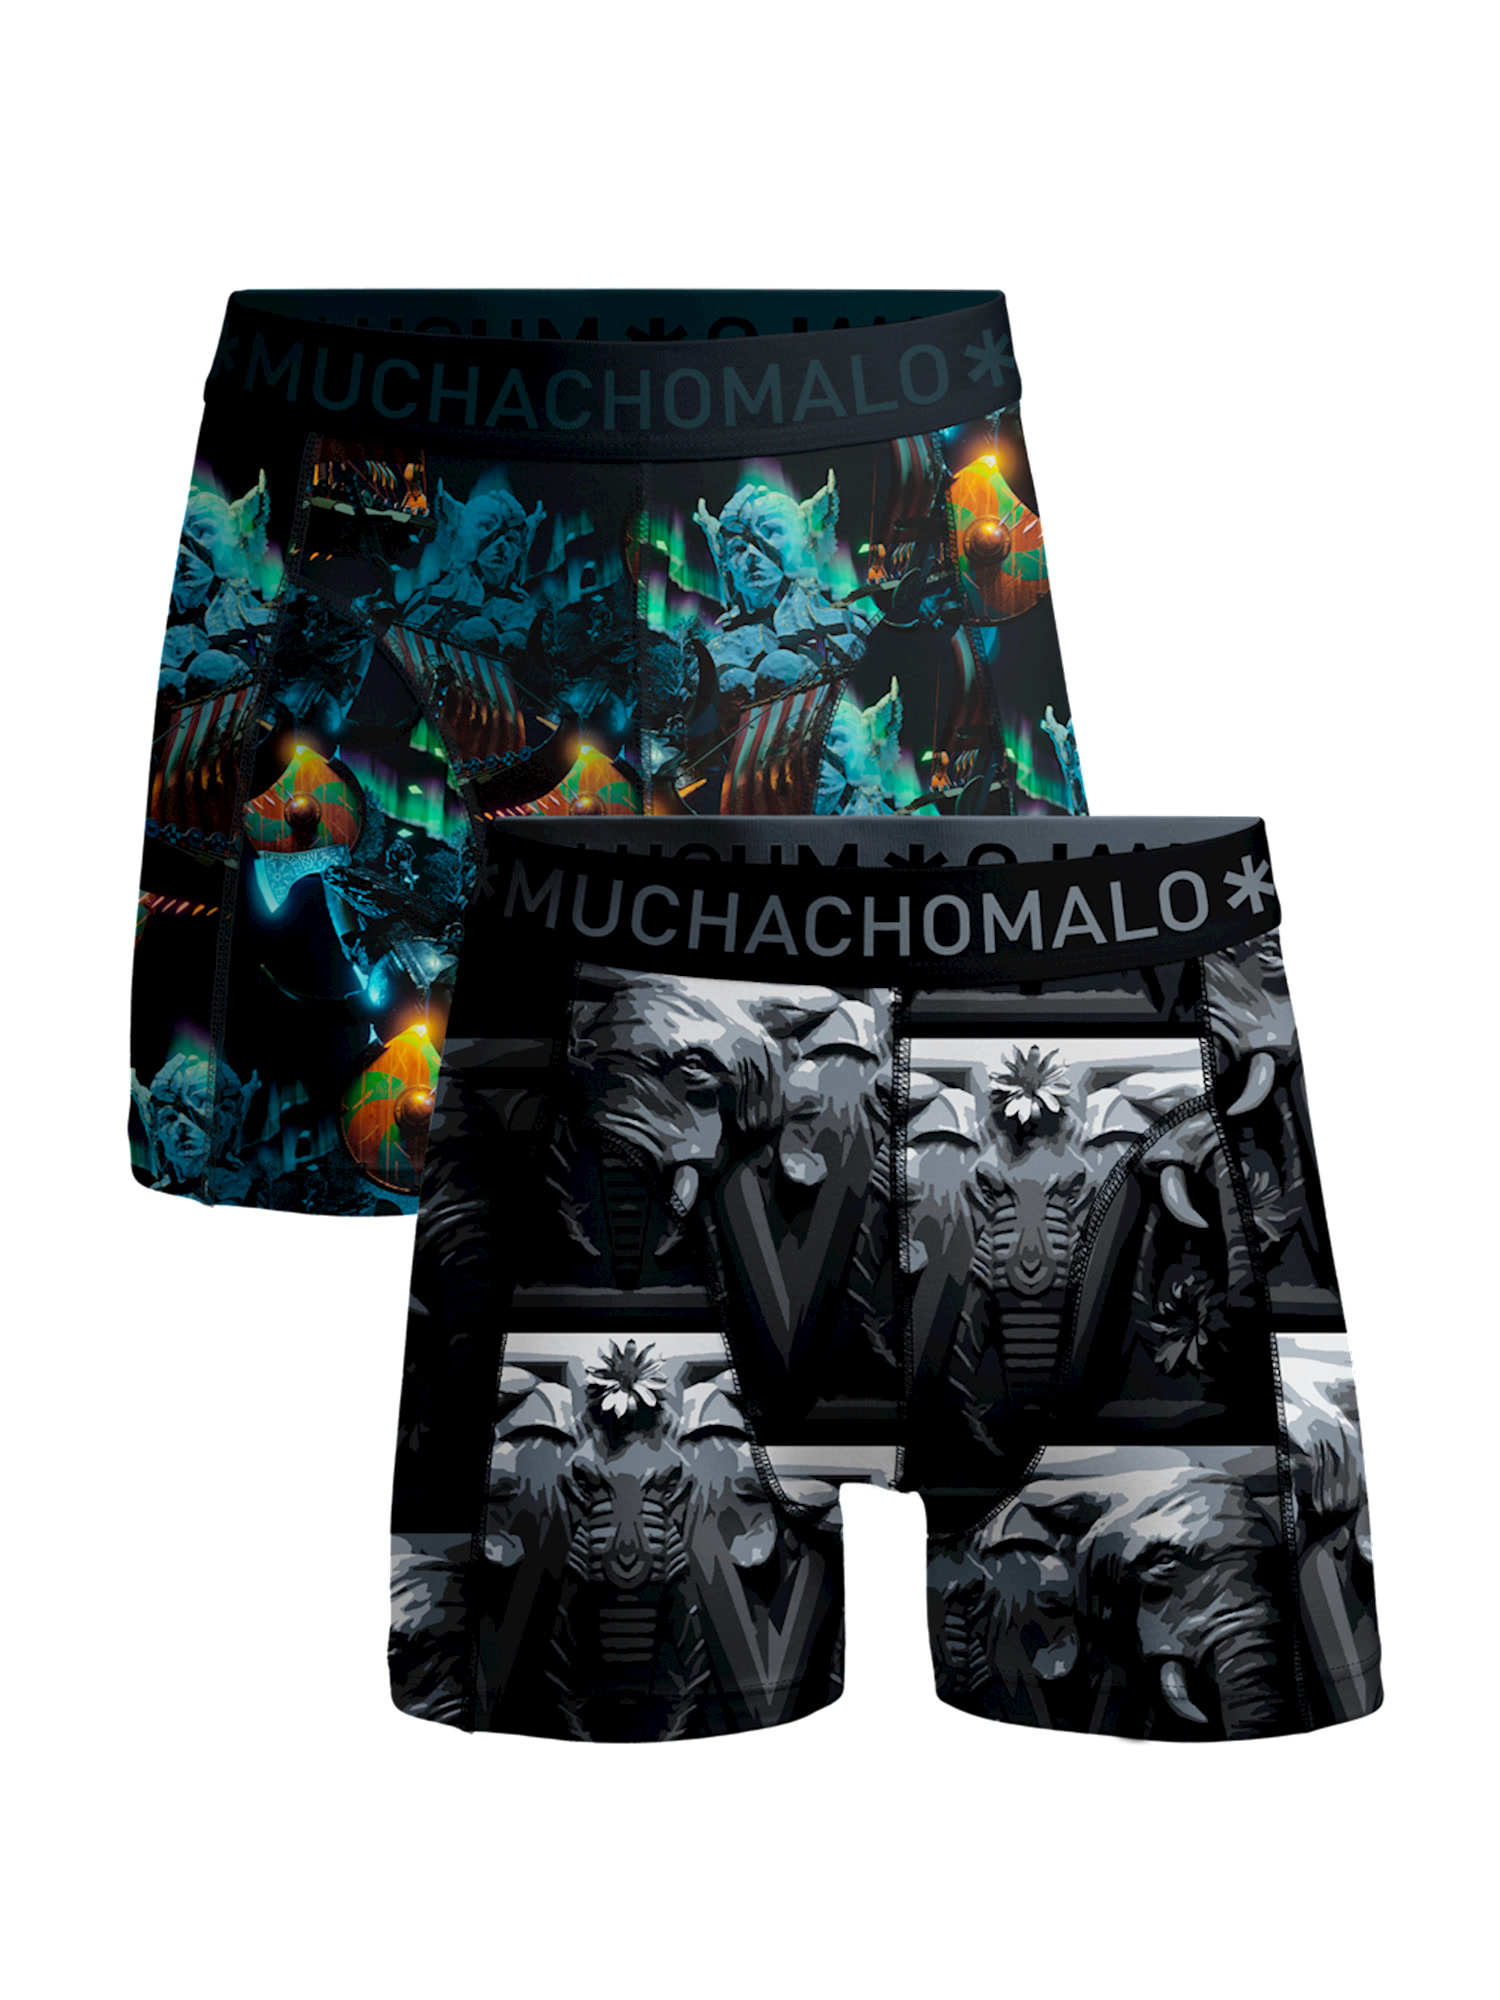 Боксеры Muchachomalo 2er-Set: Boxershorts, цвет Multicolor/Multicolor боксеры muchachomalo 2er set boxershorts цвет multicolor green black green